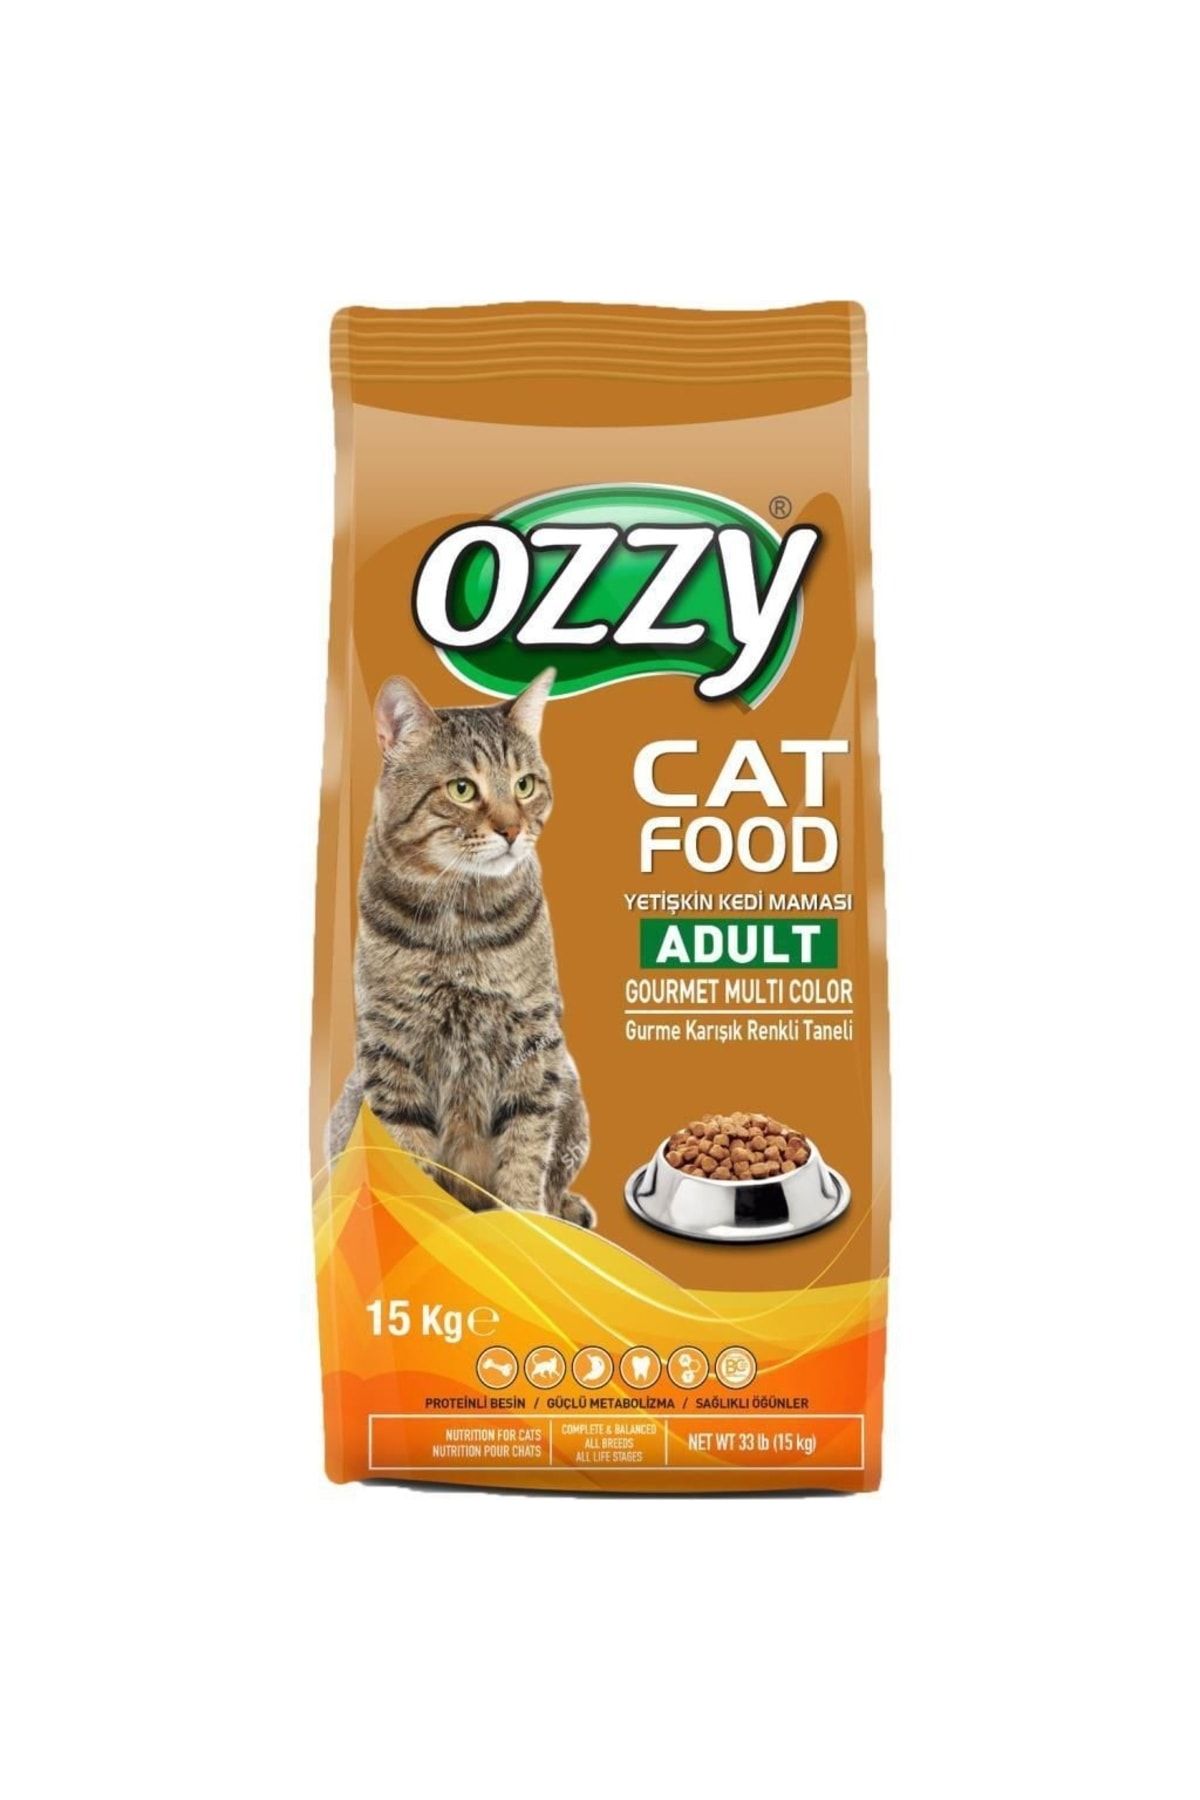 Ozzy Ozzy Gurme Renkli Taneli Yetişkin Kedi Maması 15 Kg